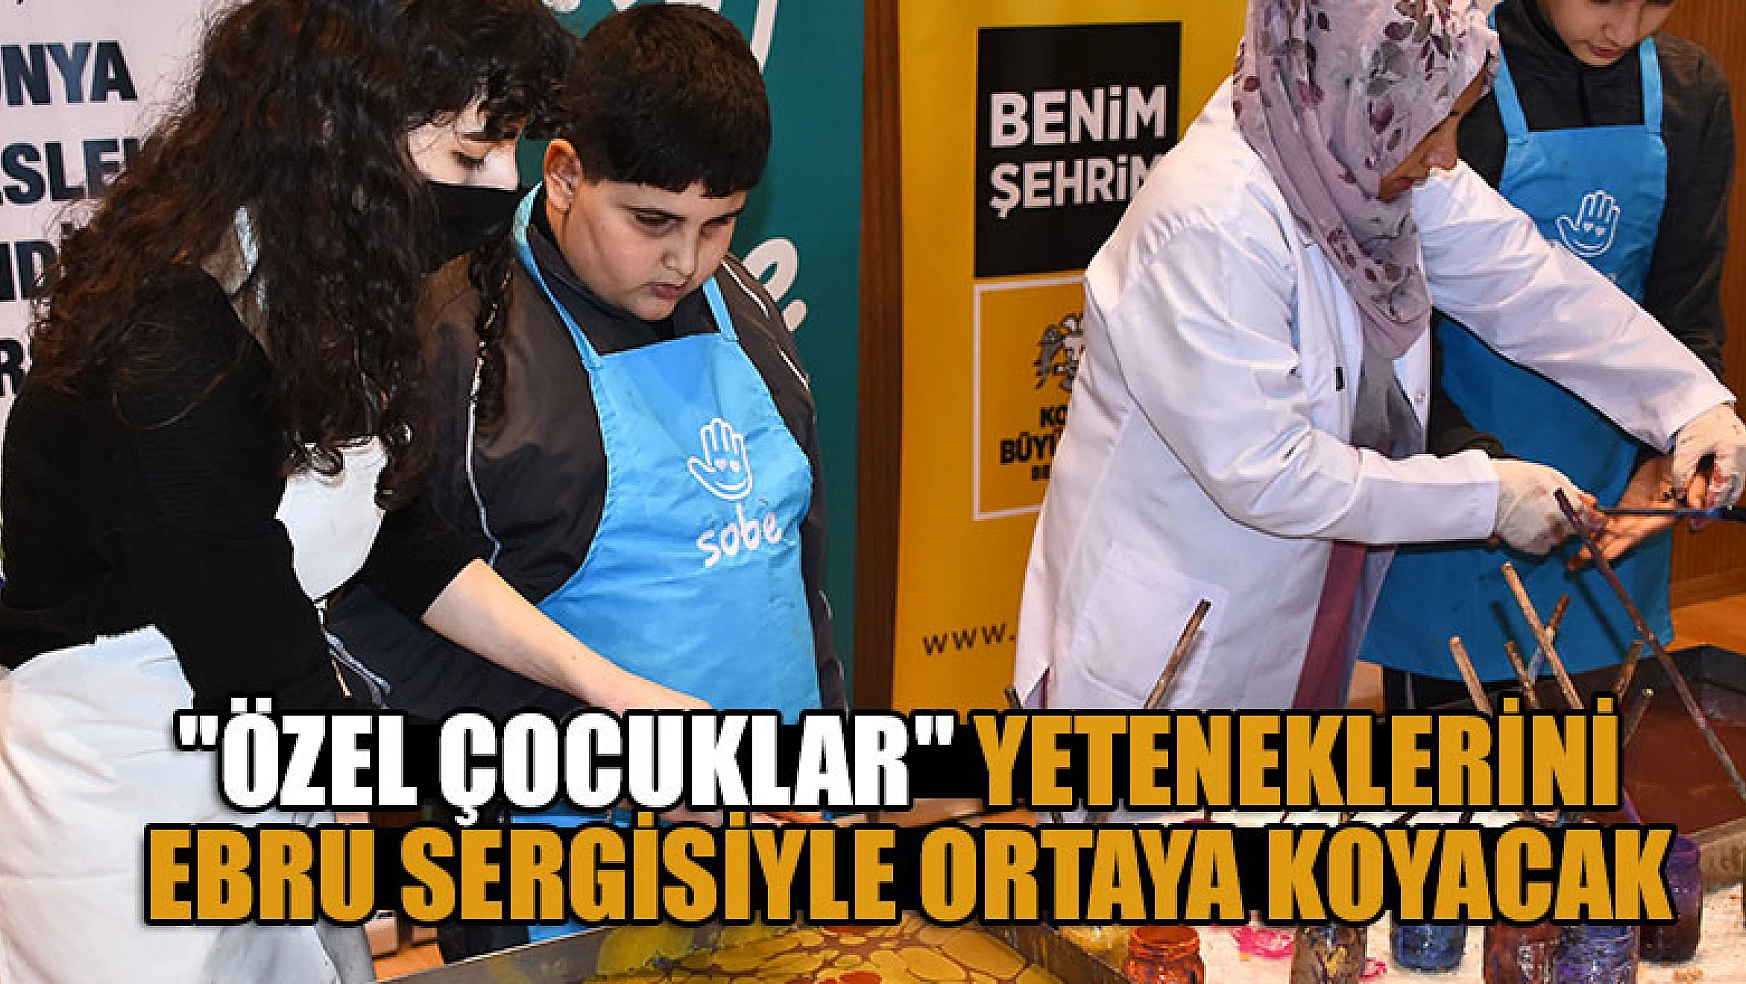 Konya'da 'Özel çocuklar' yeteneklerini ebru sergisiyle ortaya koyacak